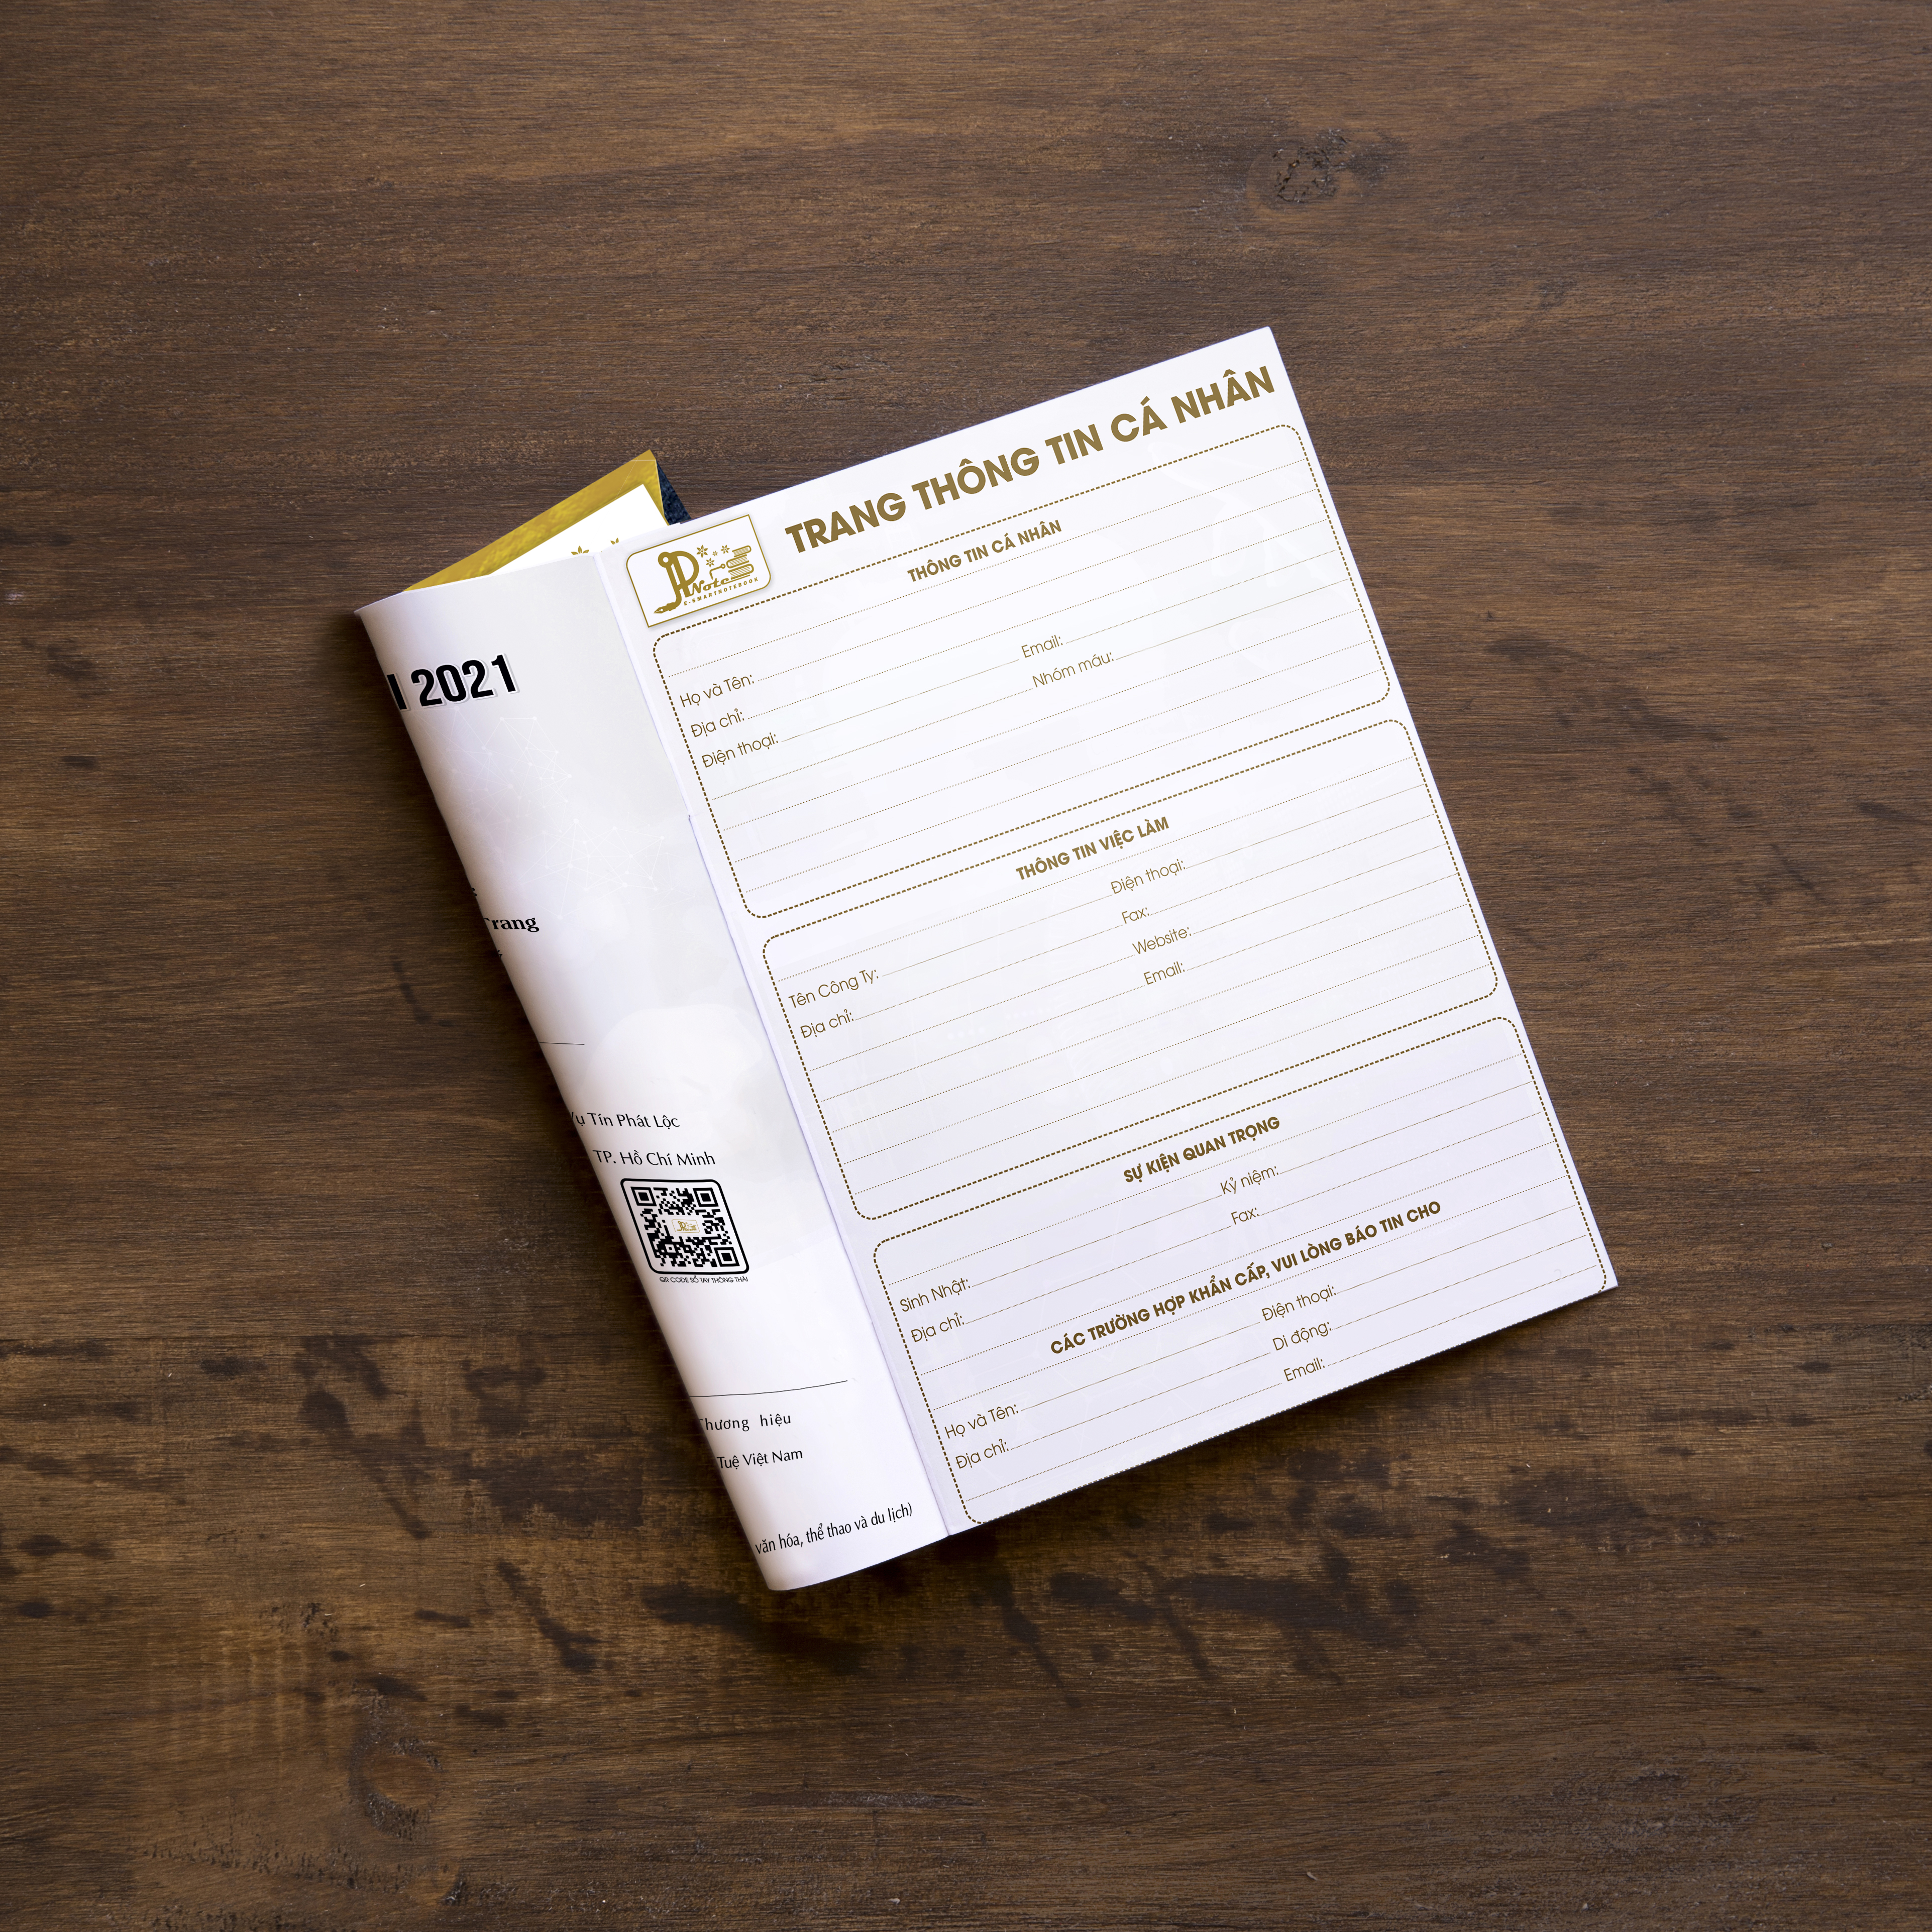 Cuốn sổ tay lập kế hoạch cá nhân E-smart Notebook 2021 TẬP 1 thiết kế với 256 trang, sử dụng trong 6 tháng giúp quản lý thời gian, công việc, mối quan hệ và tài chính hiệu quả